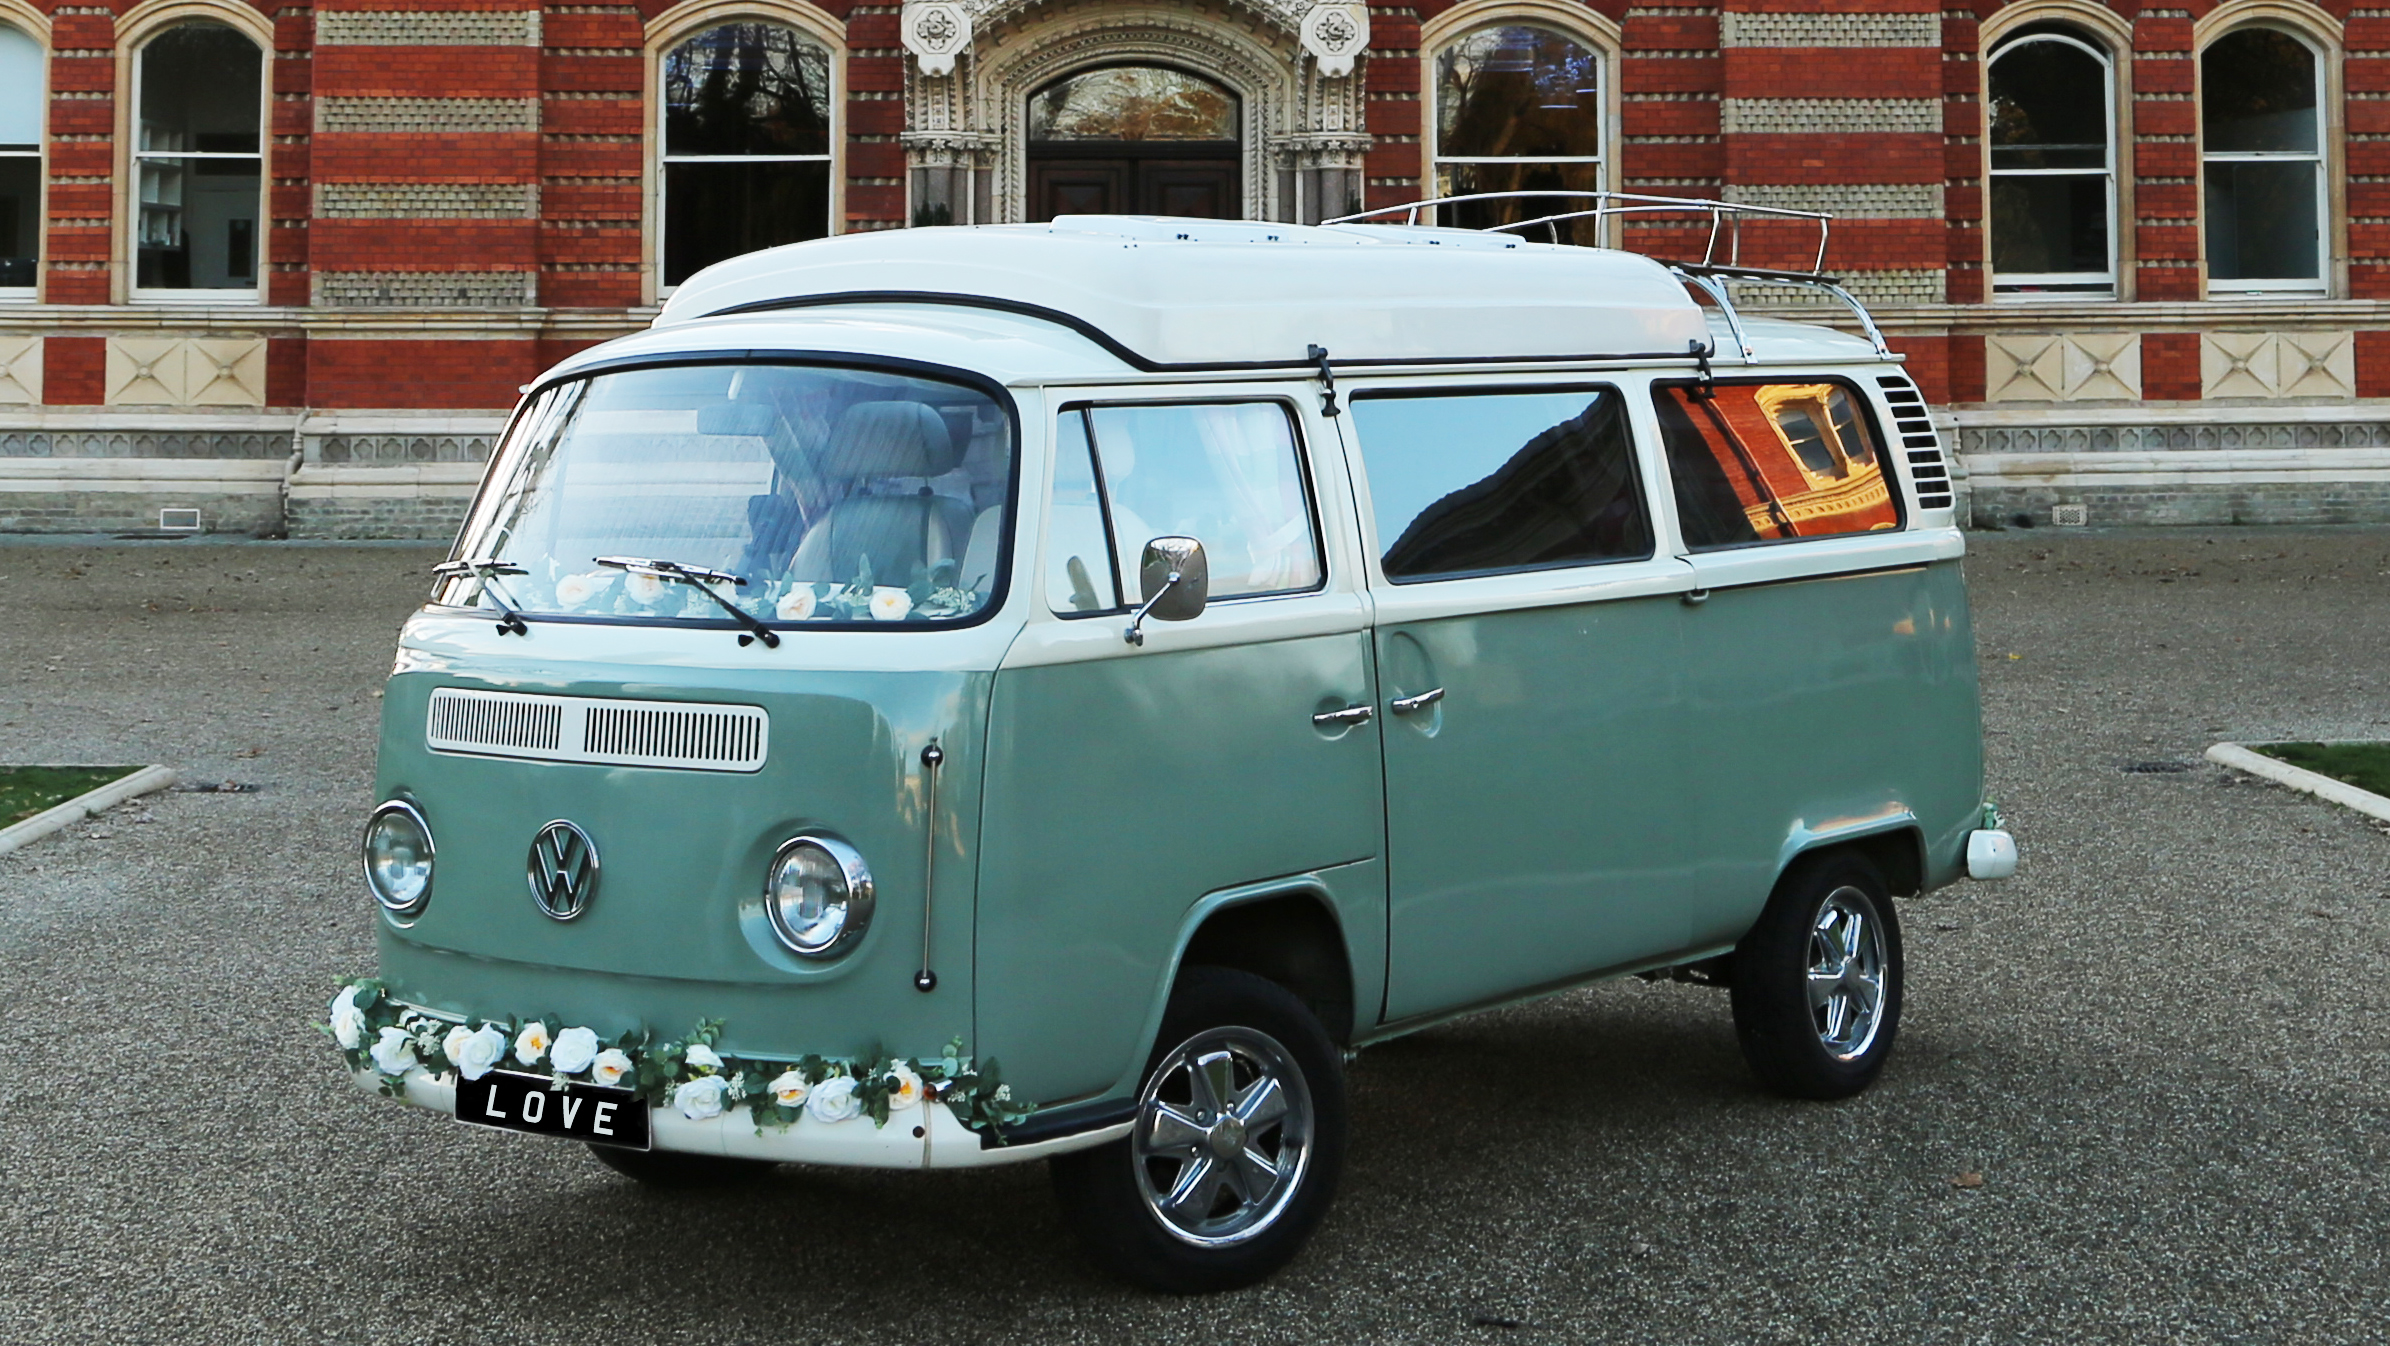 Volkswagen Bay Window Campervan wedding car for hire in London